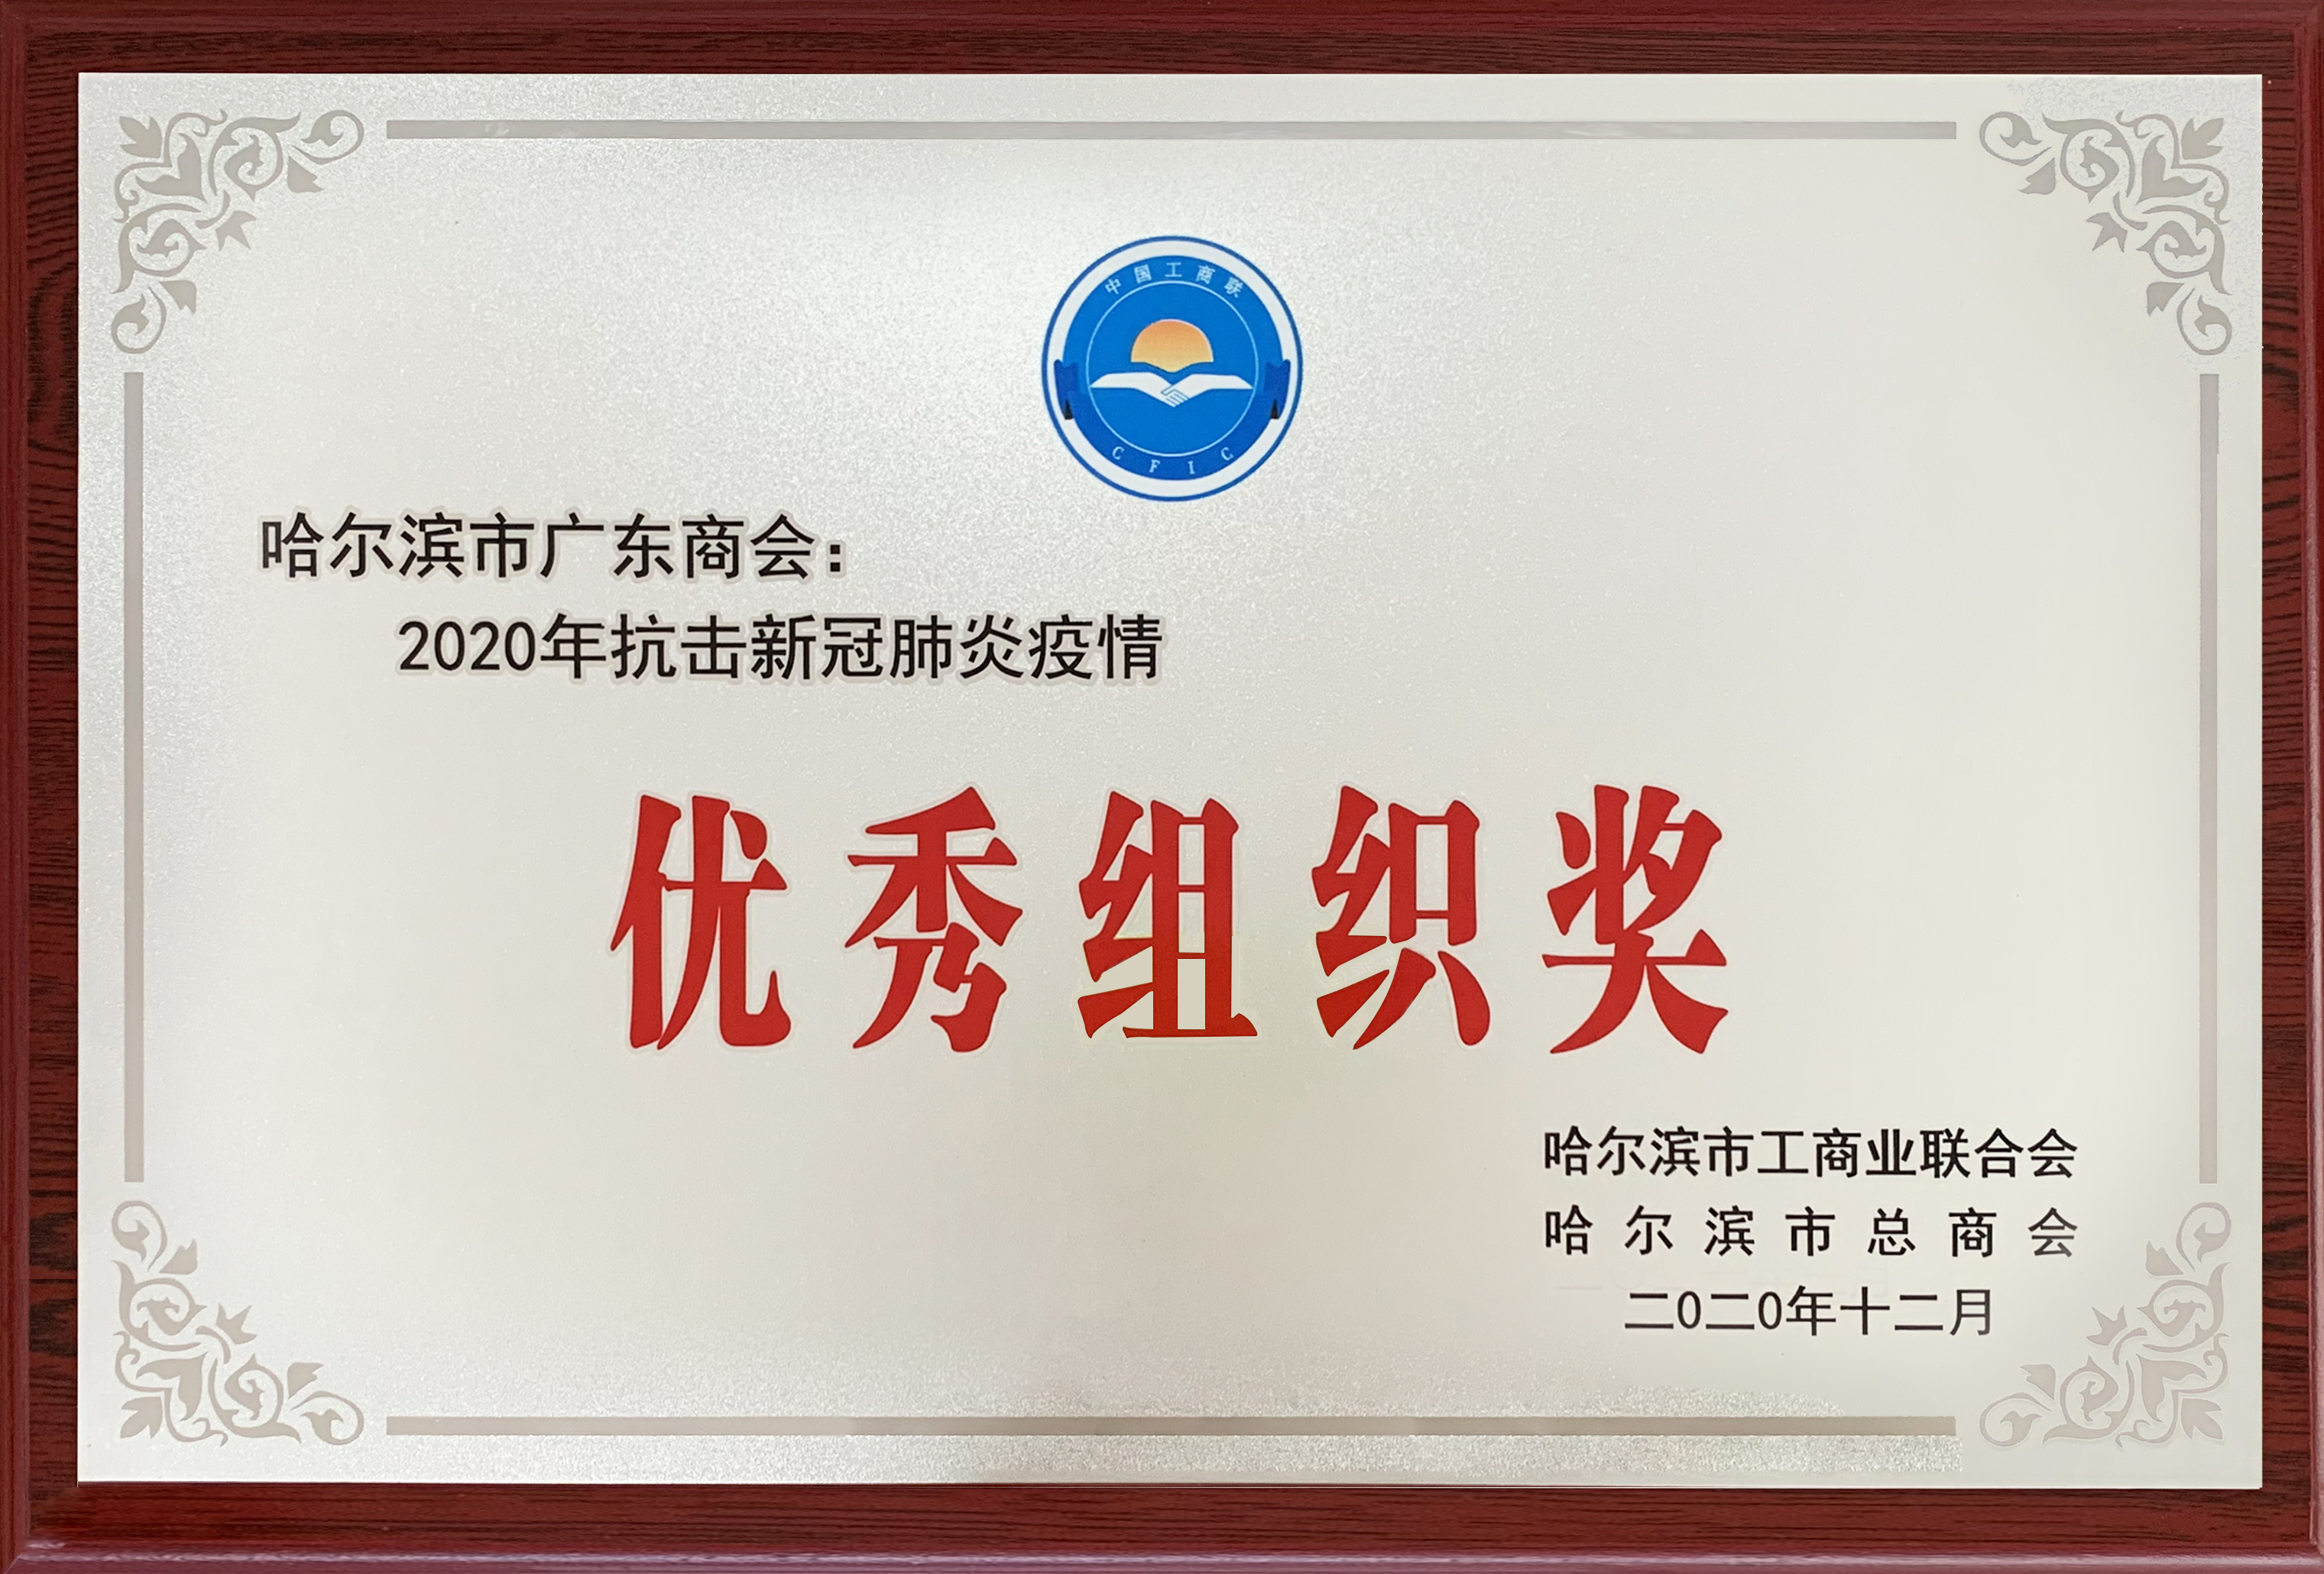 践初心、作表率 ——哈尔滨市广东商会获得多项荣誉表彰(图5)